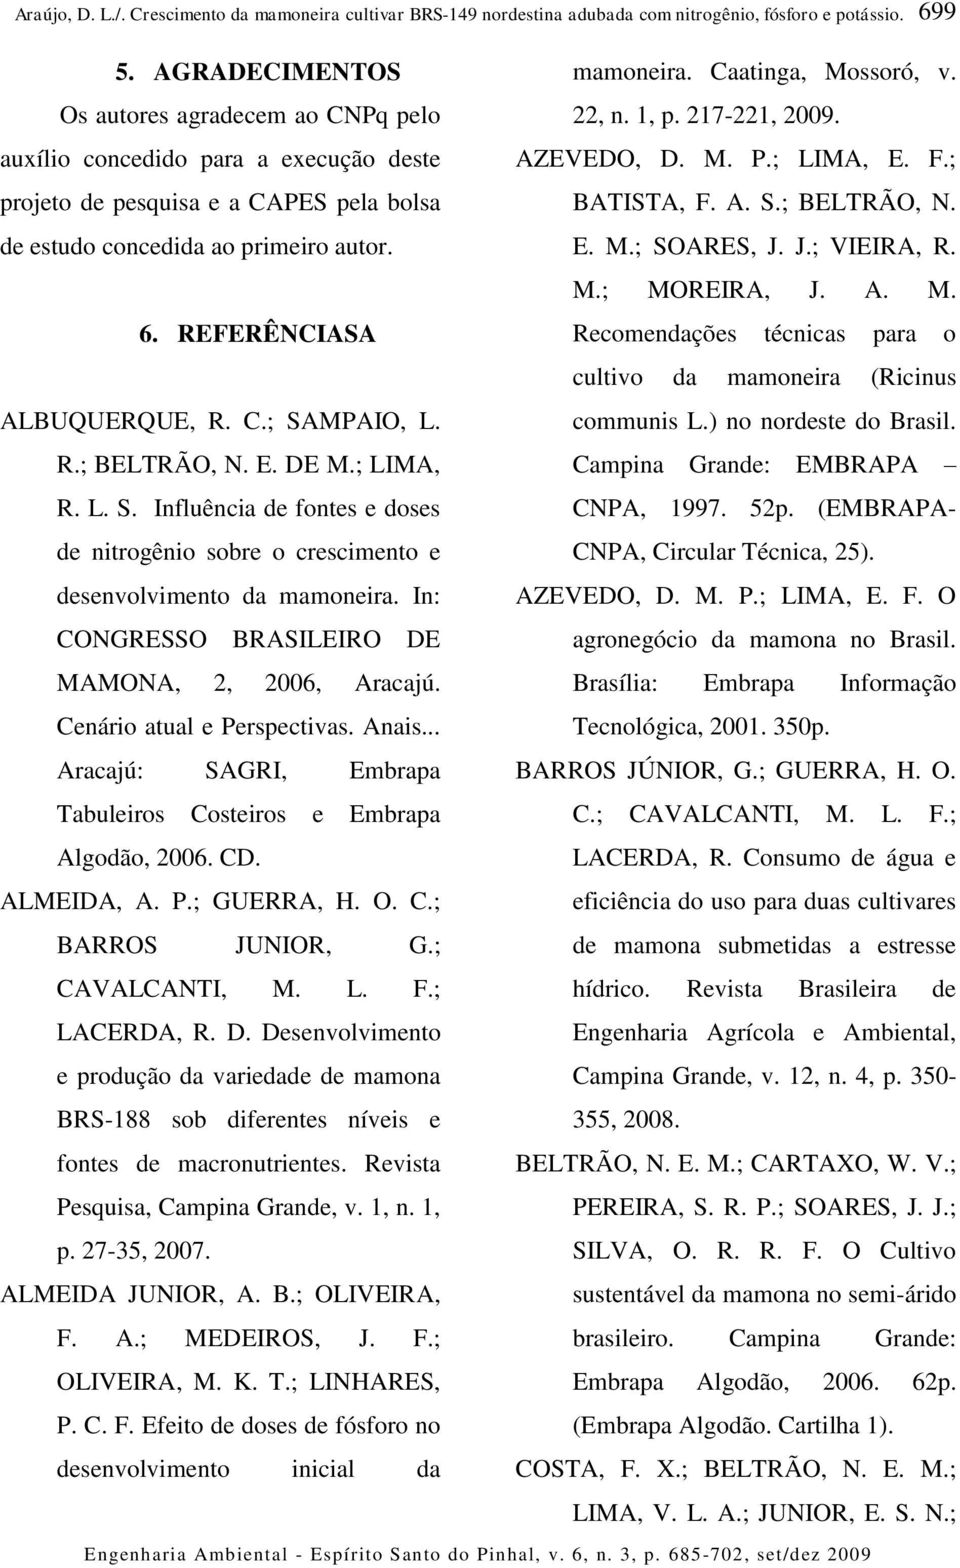 REFERÊNCIASA Recomendações técnicas para o cultivo da mamoneira (Ricinus ALBUQUERQUE, R. C.; SAMPAIO, L. communis L.) no nordeste do Brasil. R.; BELTRÃO, N. E. DE M.; LIMA, Campina Grande: EMBRAPA R.